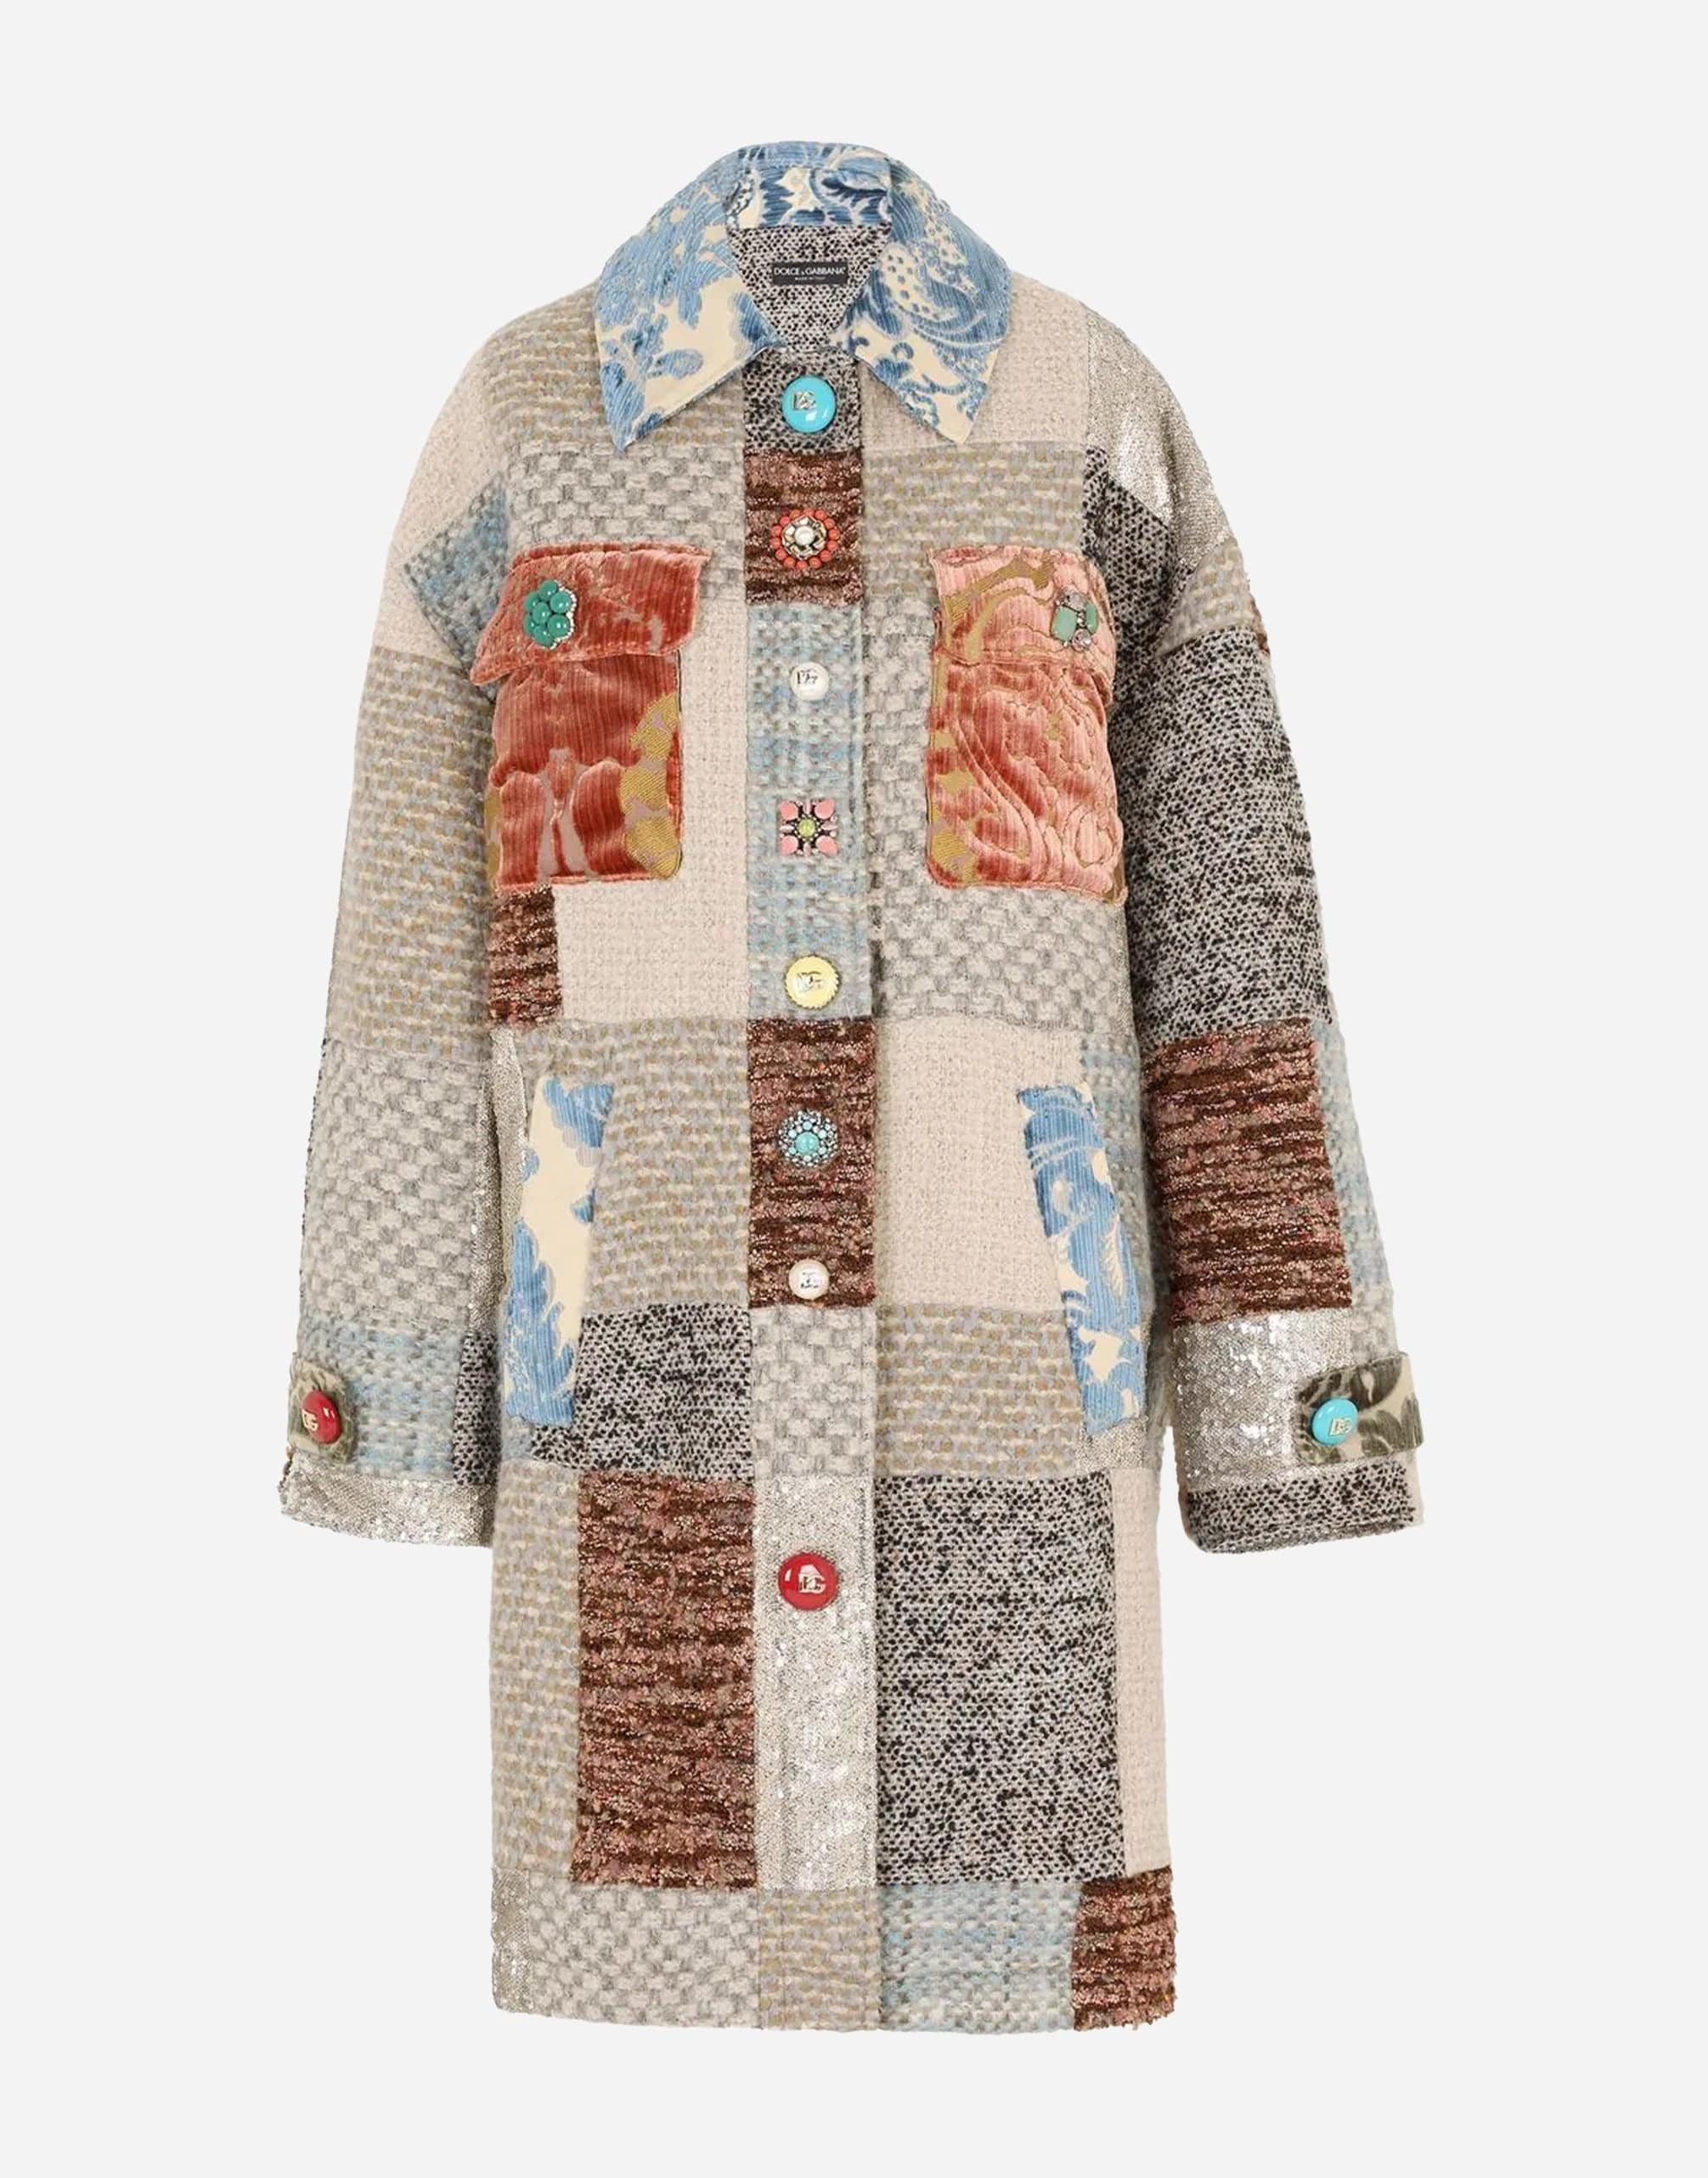 Patchwork tweed cappotto con abbellimento ingioiellato